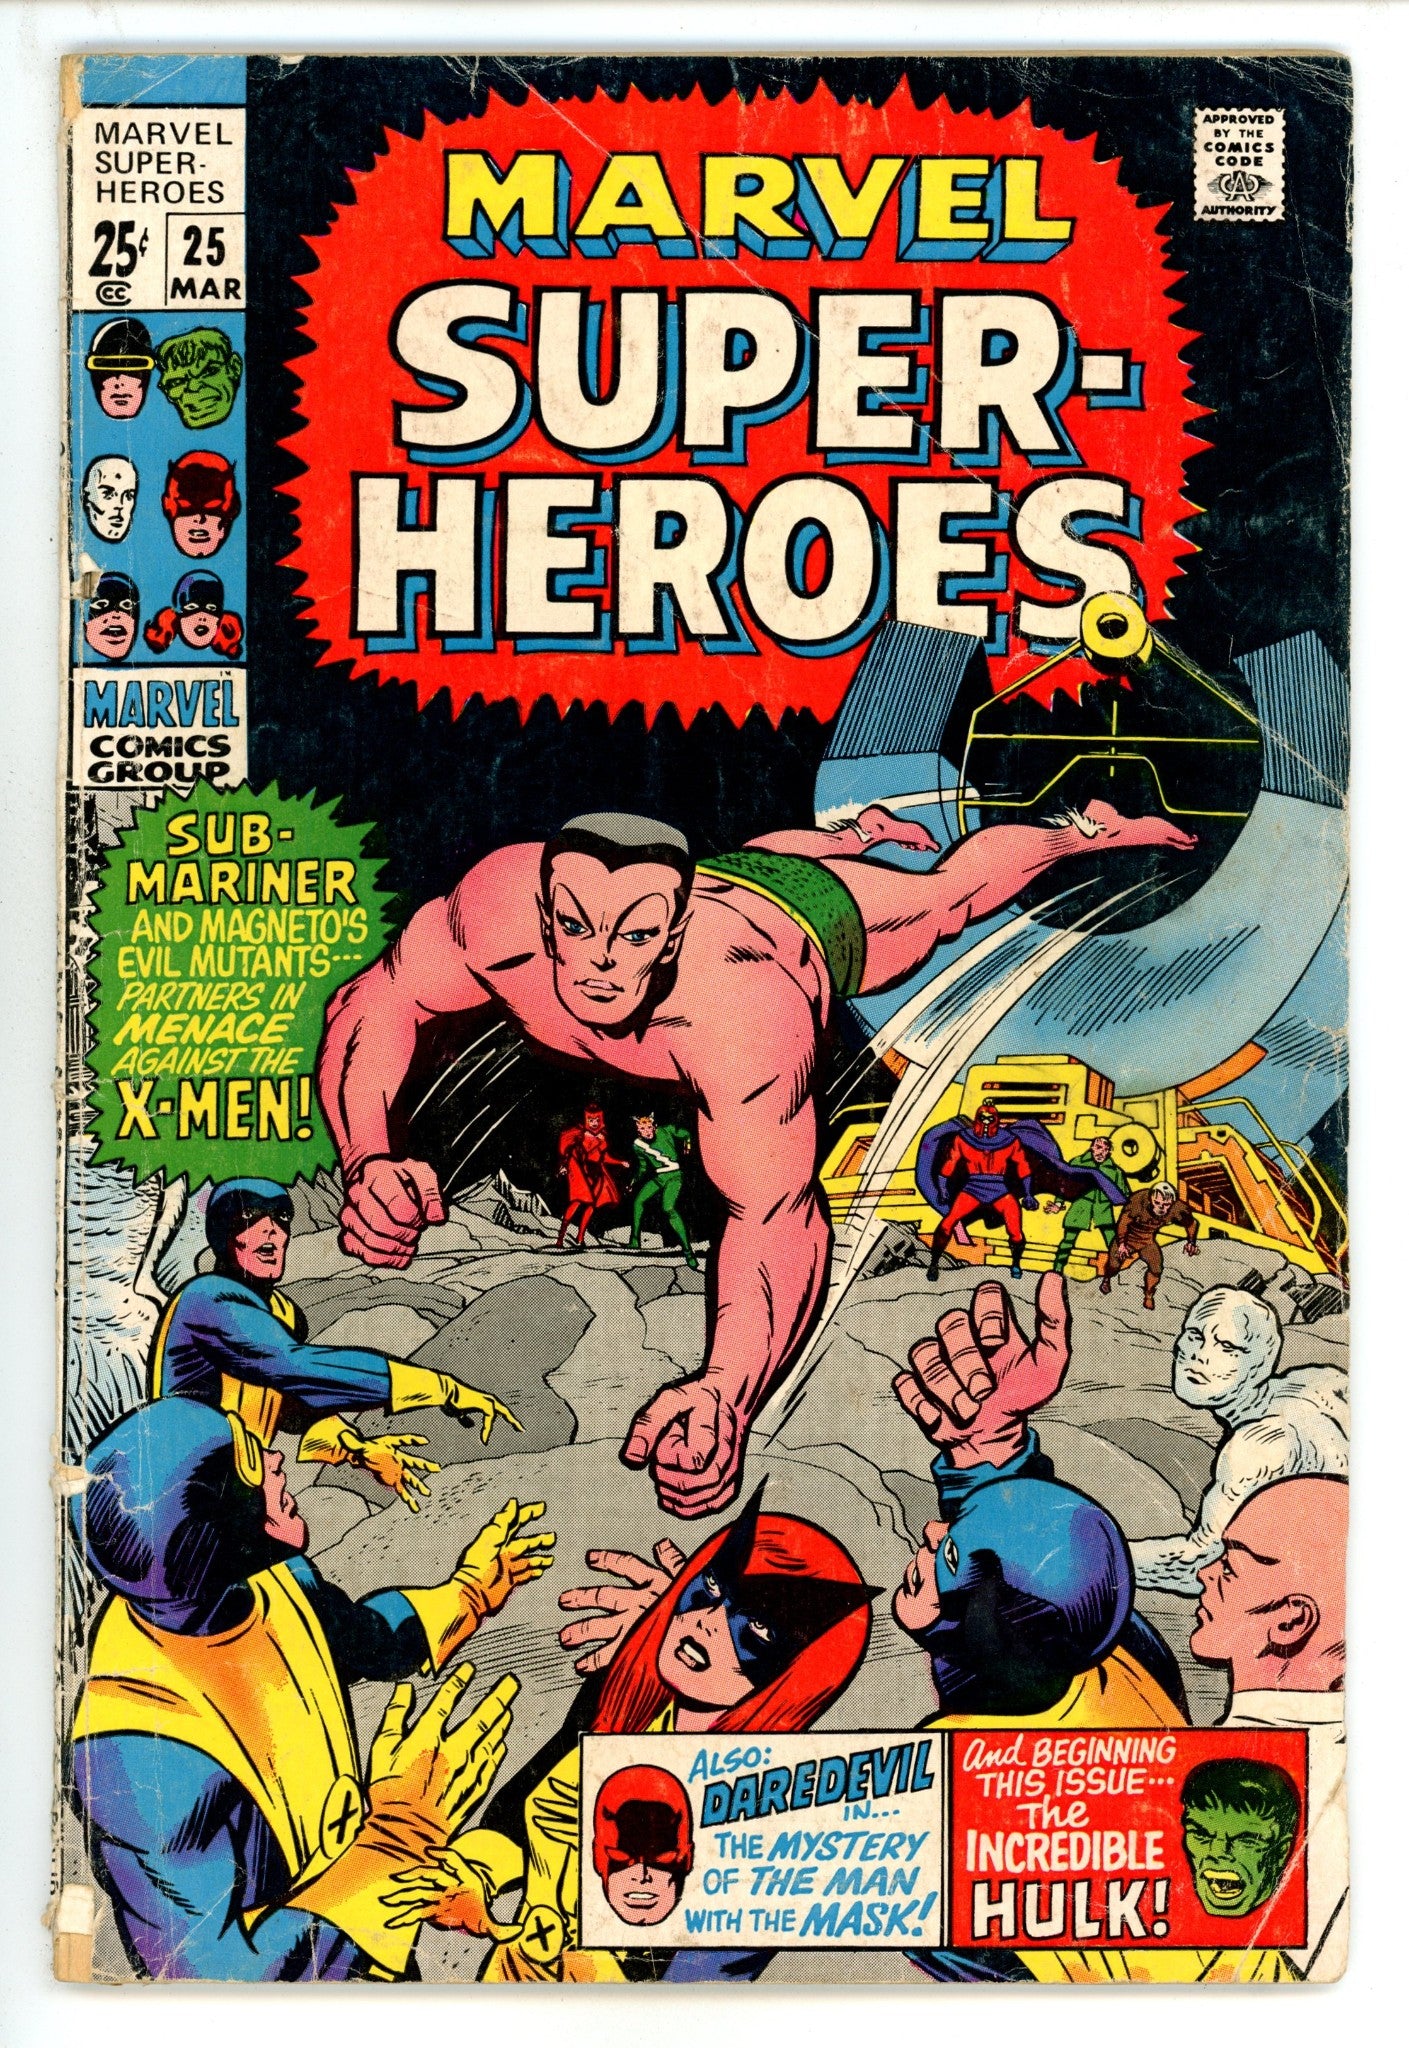 Marvel Super-Heroes Vol 1 25 GD/VG (3.0) (1970) 